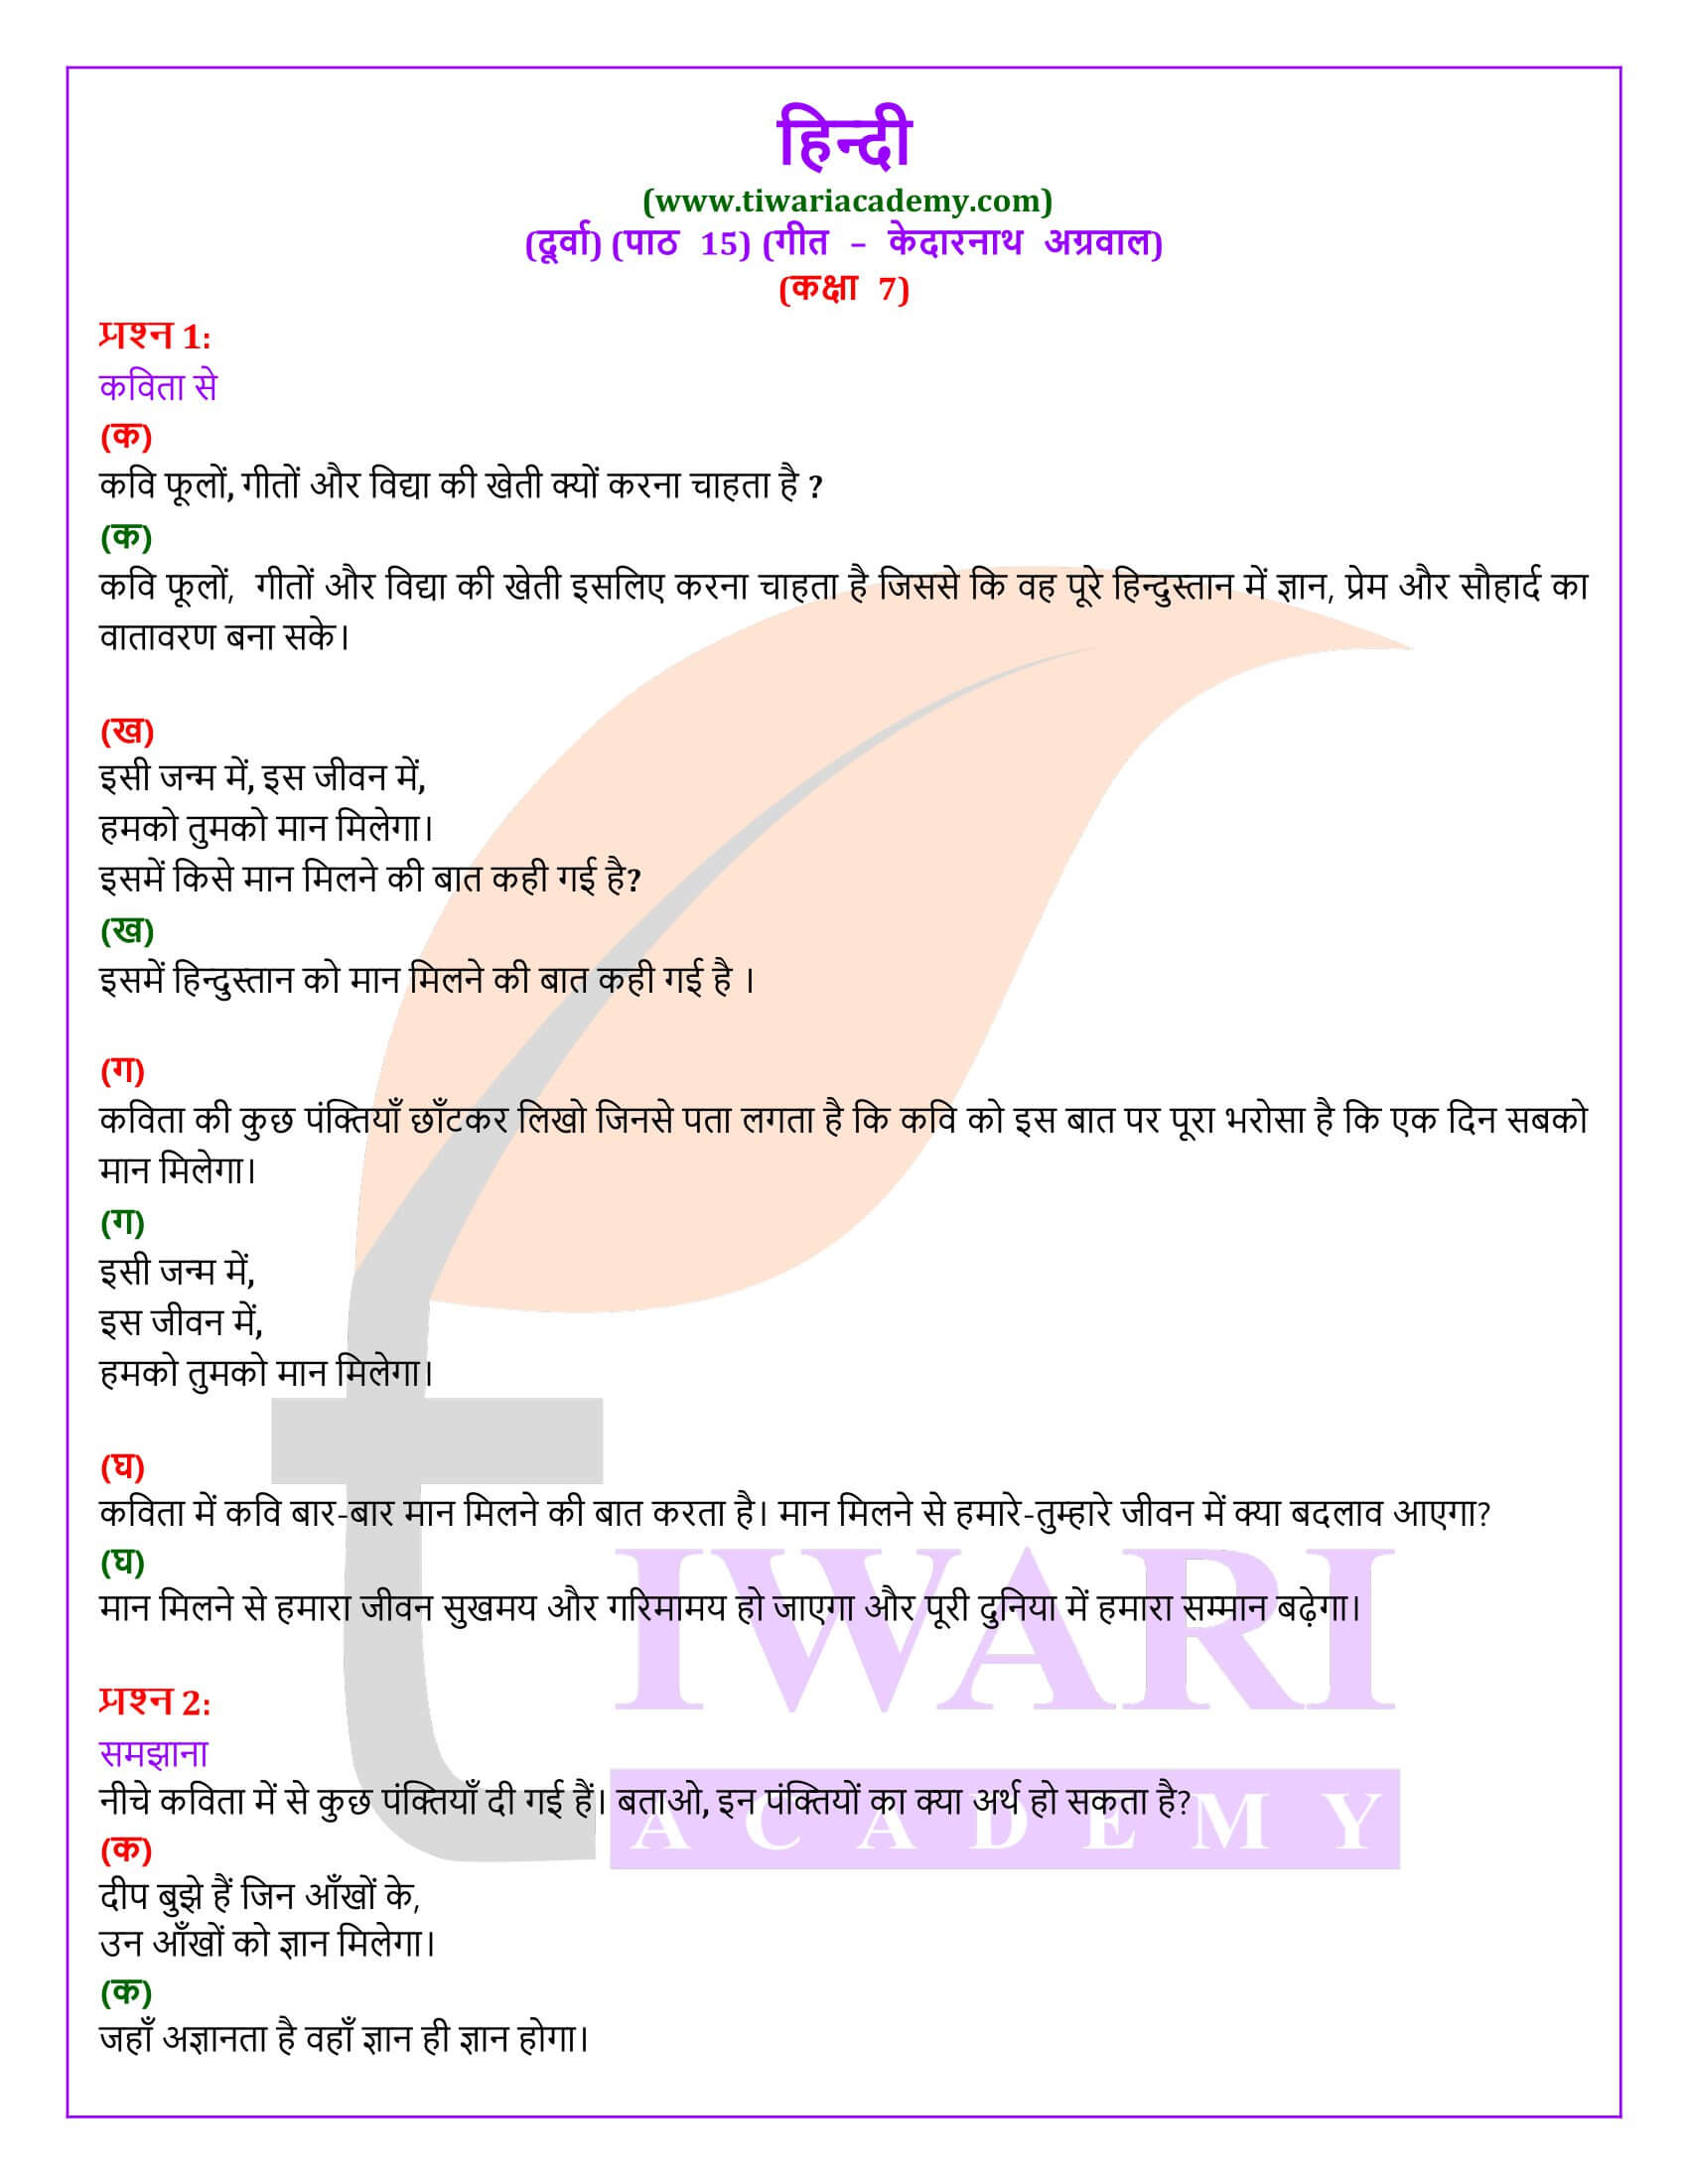 कक्षा 7 हिंदी दूर्वा अध्याय 15 गीत के प्रश्न उत्तर